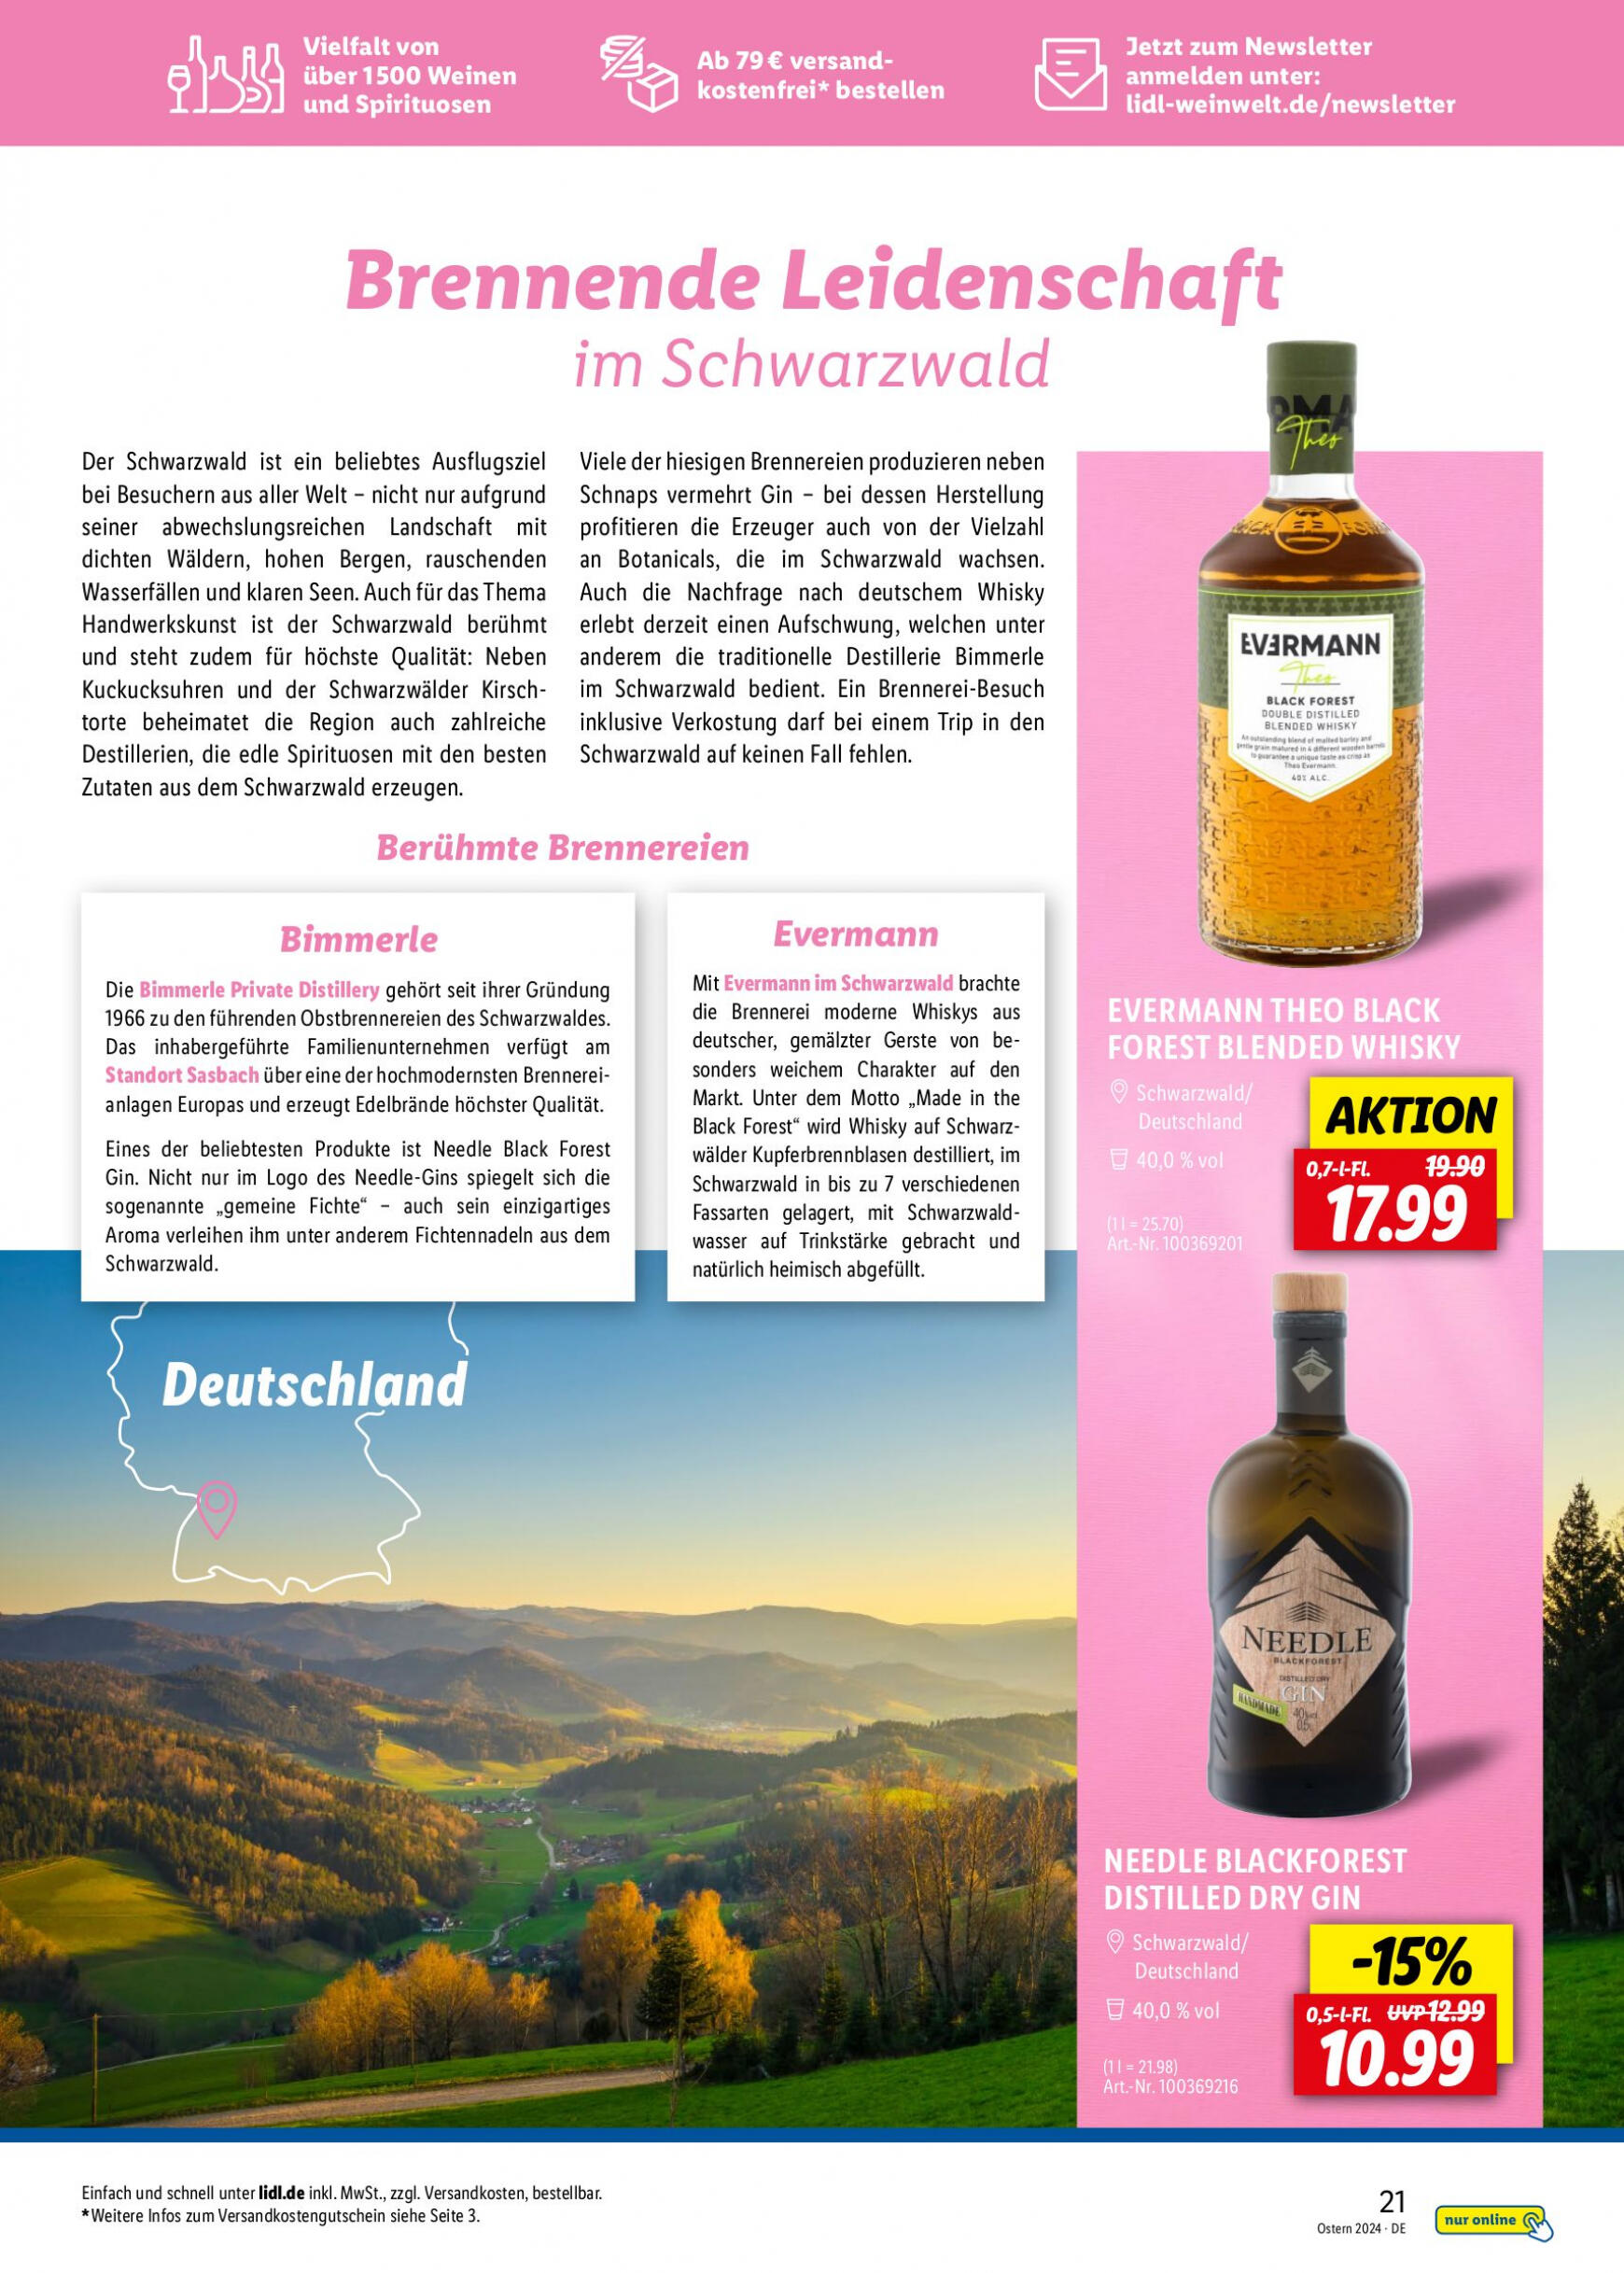 lidl - Flyer Lidl - Wein Entkorkt aktuell 04.03. - 30.04. - page: 21